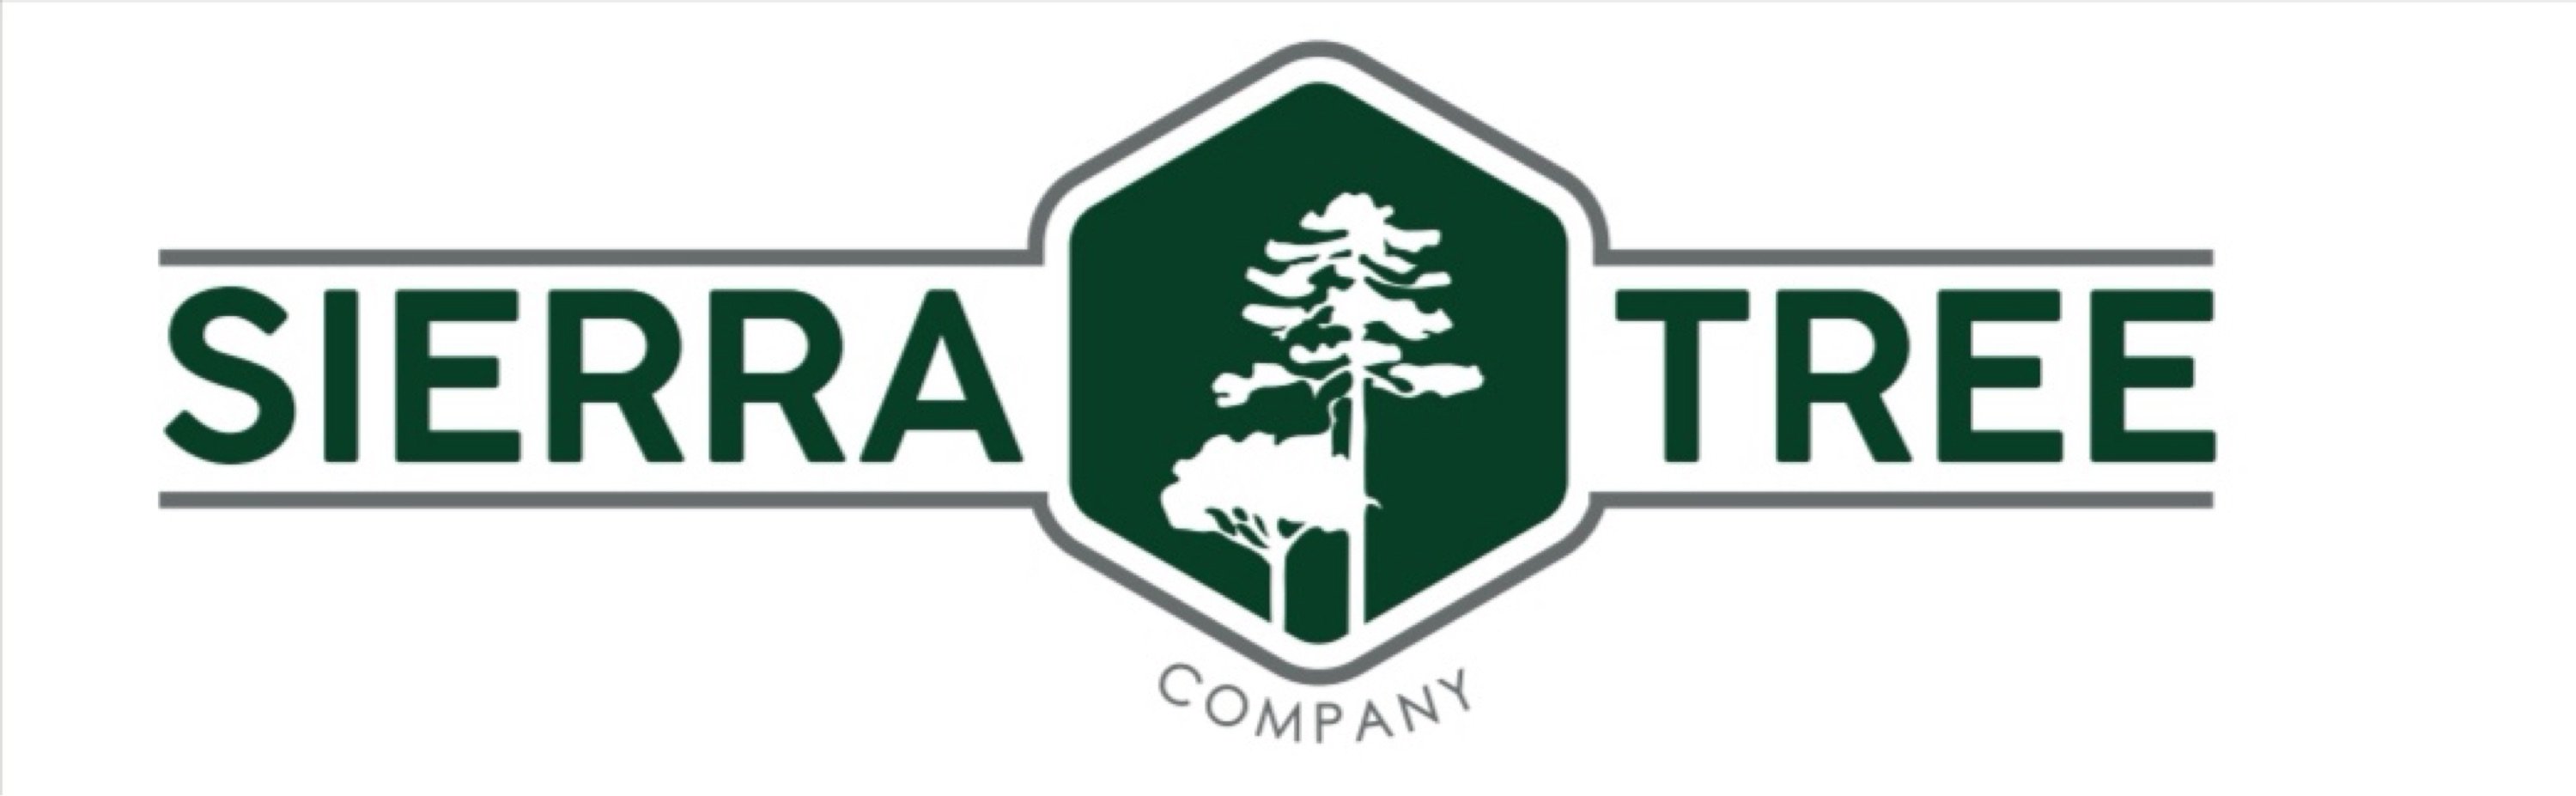 Sierra Tree Company Logo